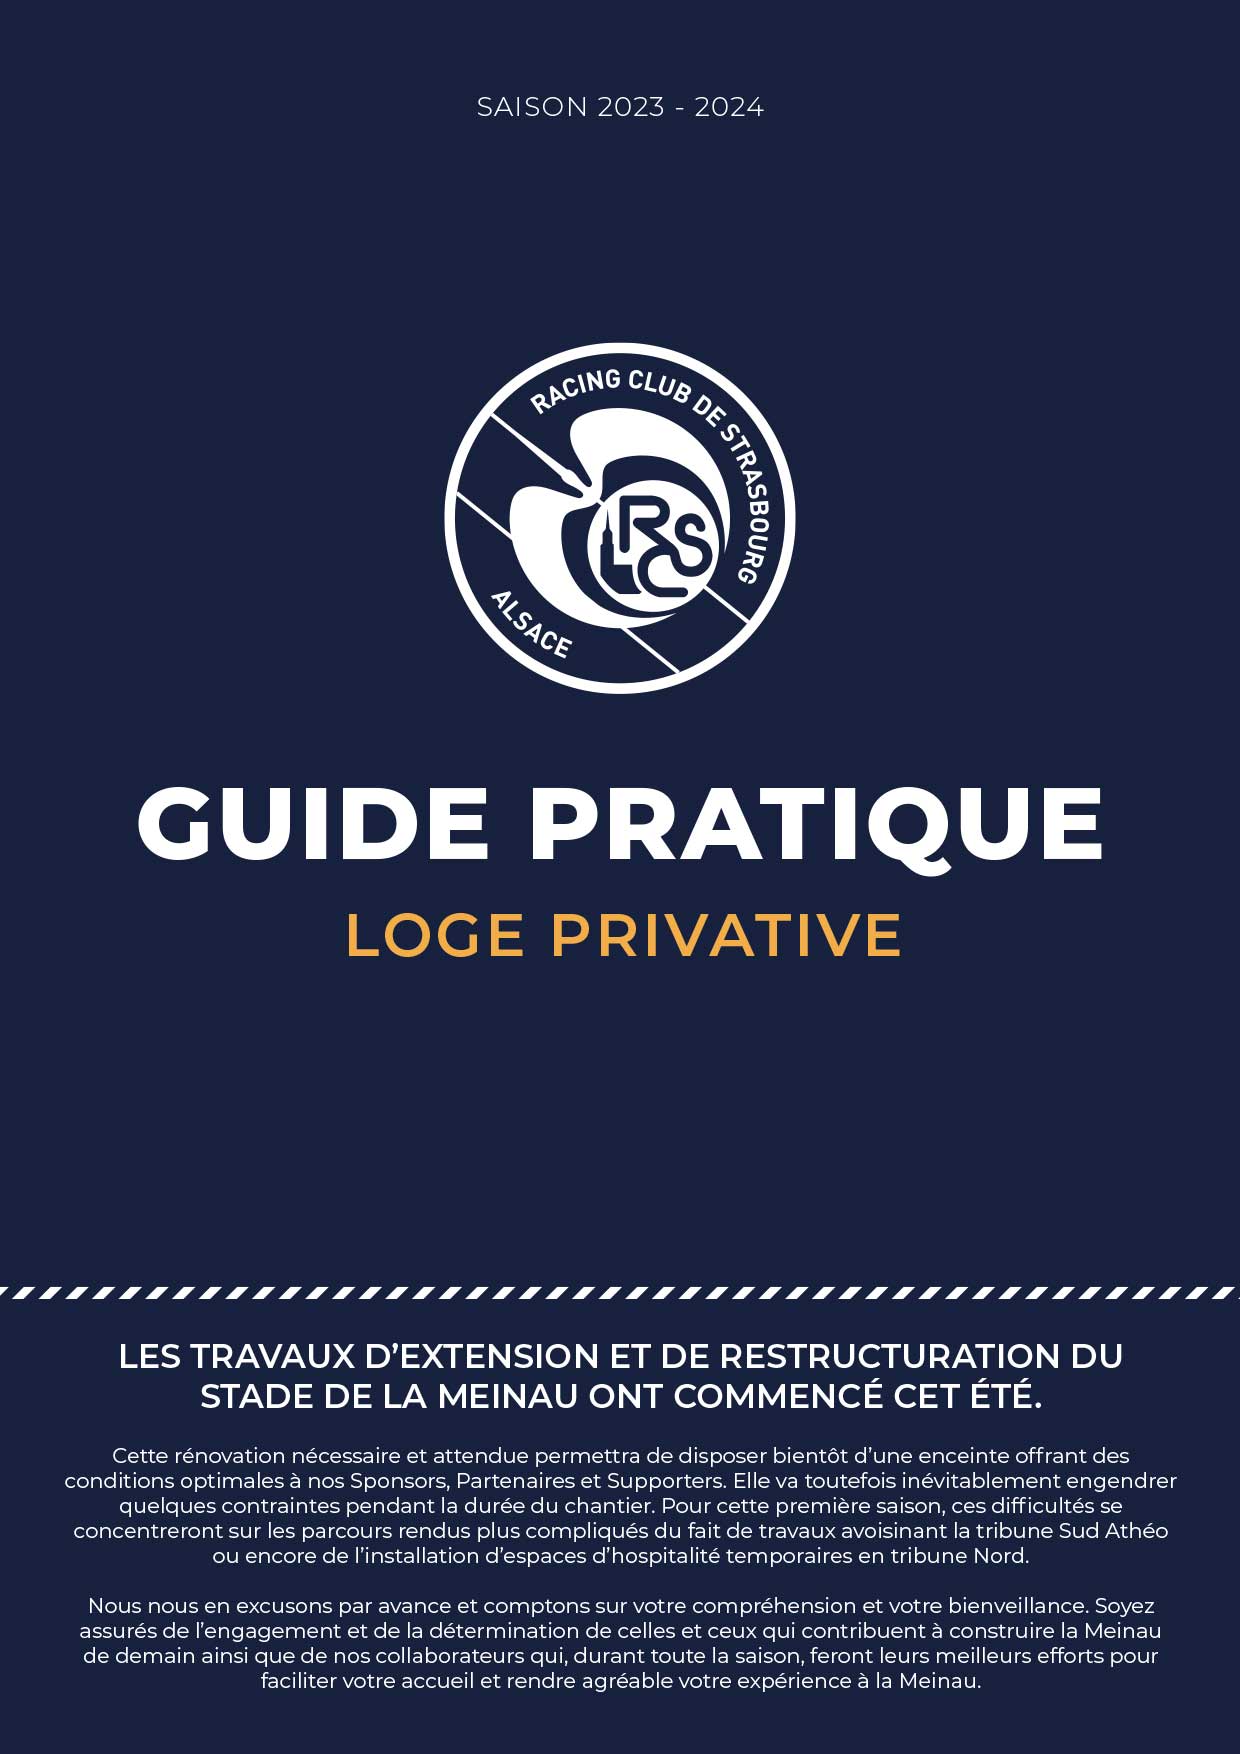 Guide Pratique salon Loge Privative